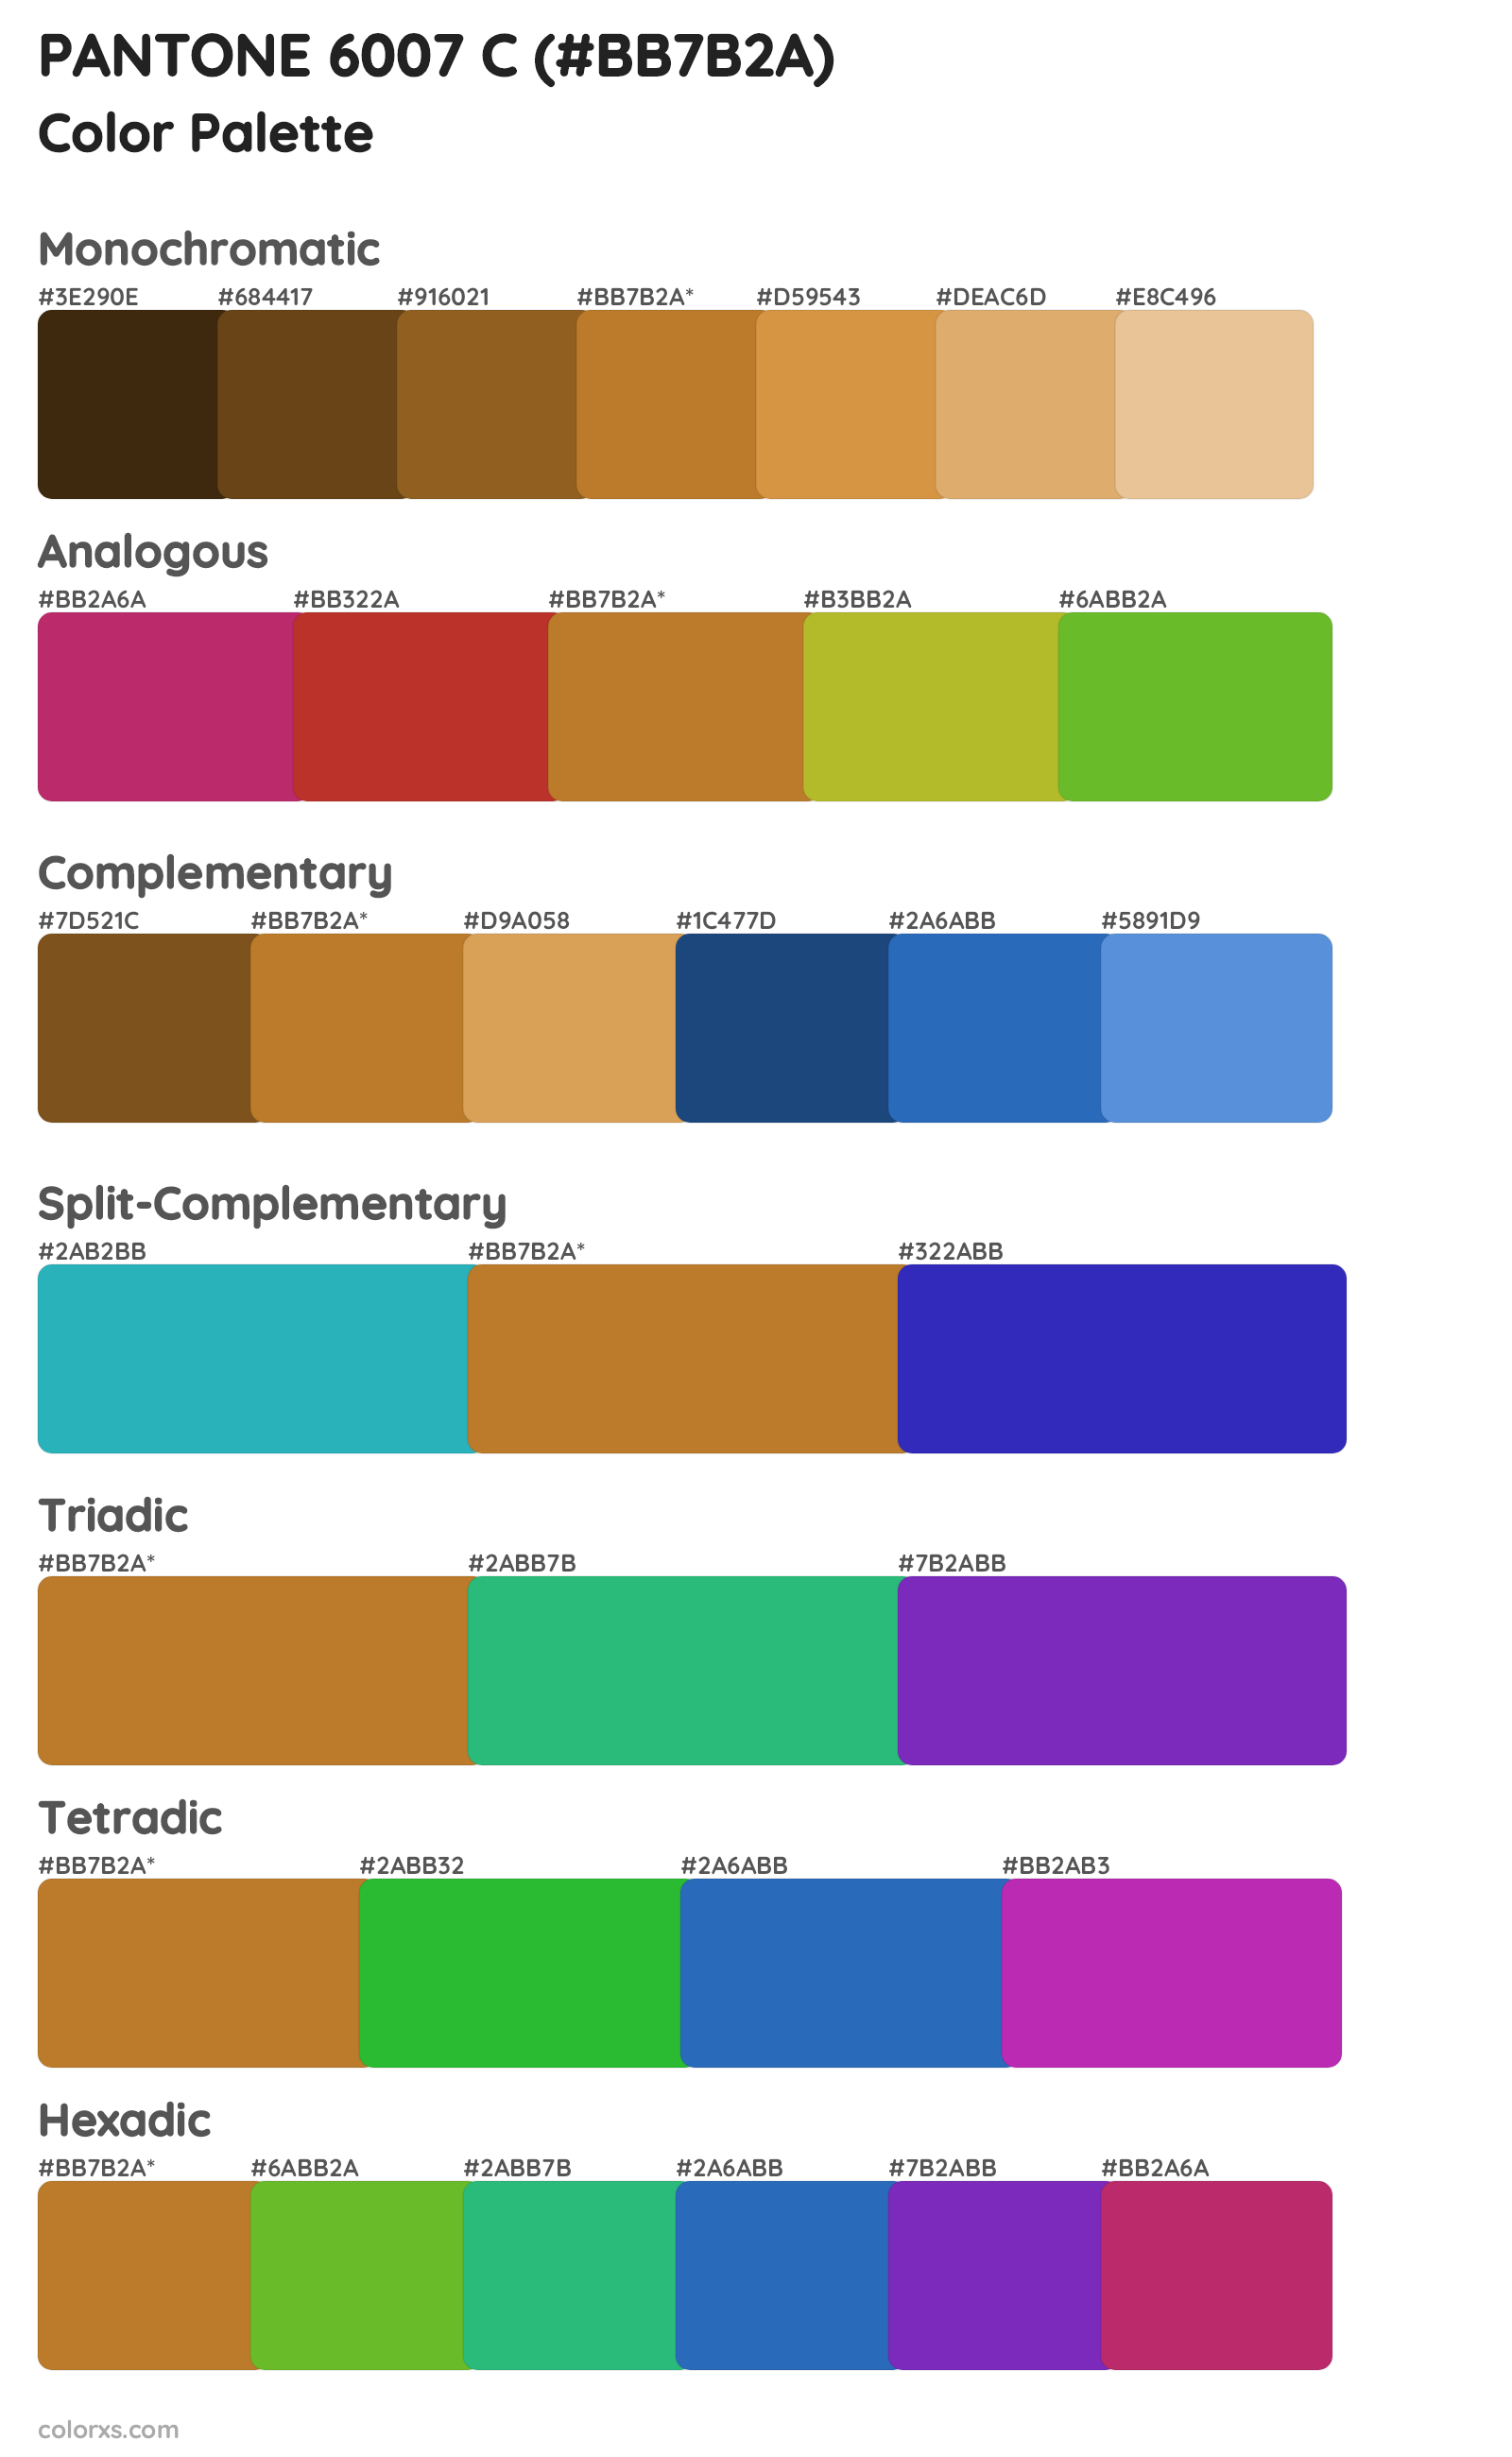 PANTONE 6007 C Color Scheme Palettes